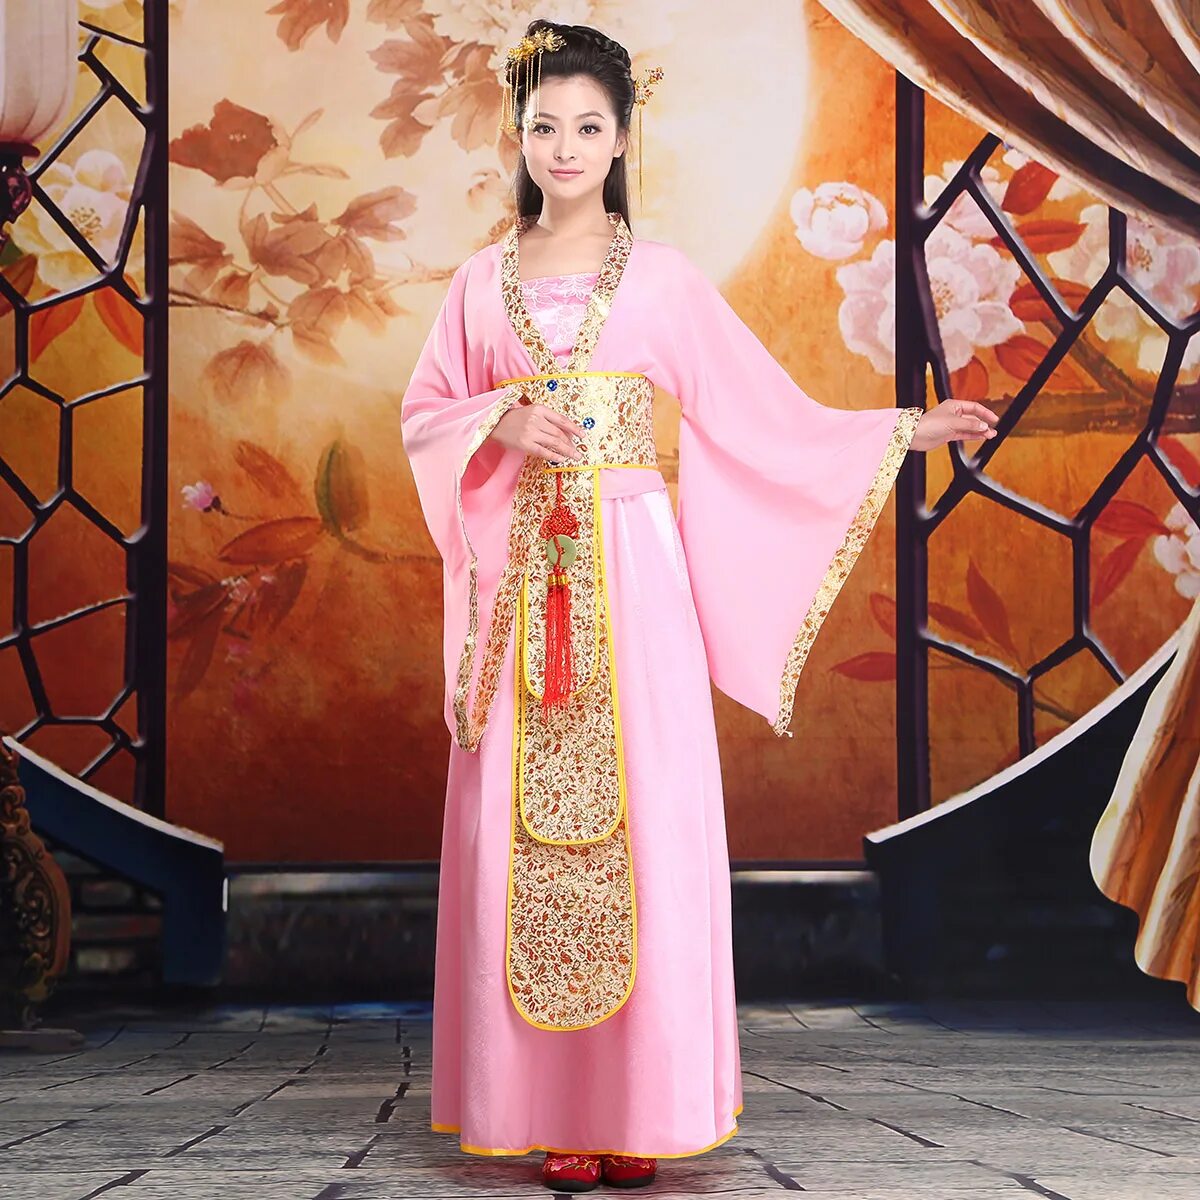 Китайские принцессы. Традиционная китайская одежда Ханьфу. Китайская принцесса в Ханьфу. Ханьфу династии Хань. Ханьфу династии Цинь.